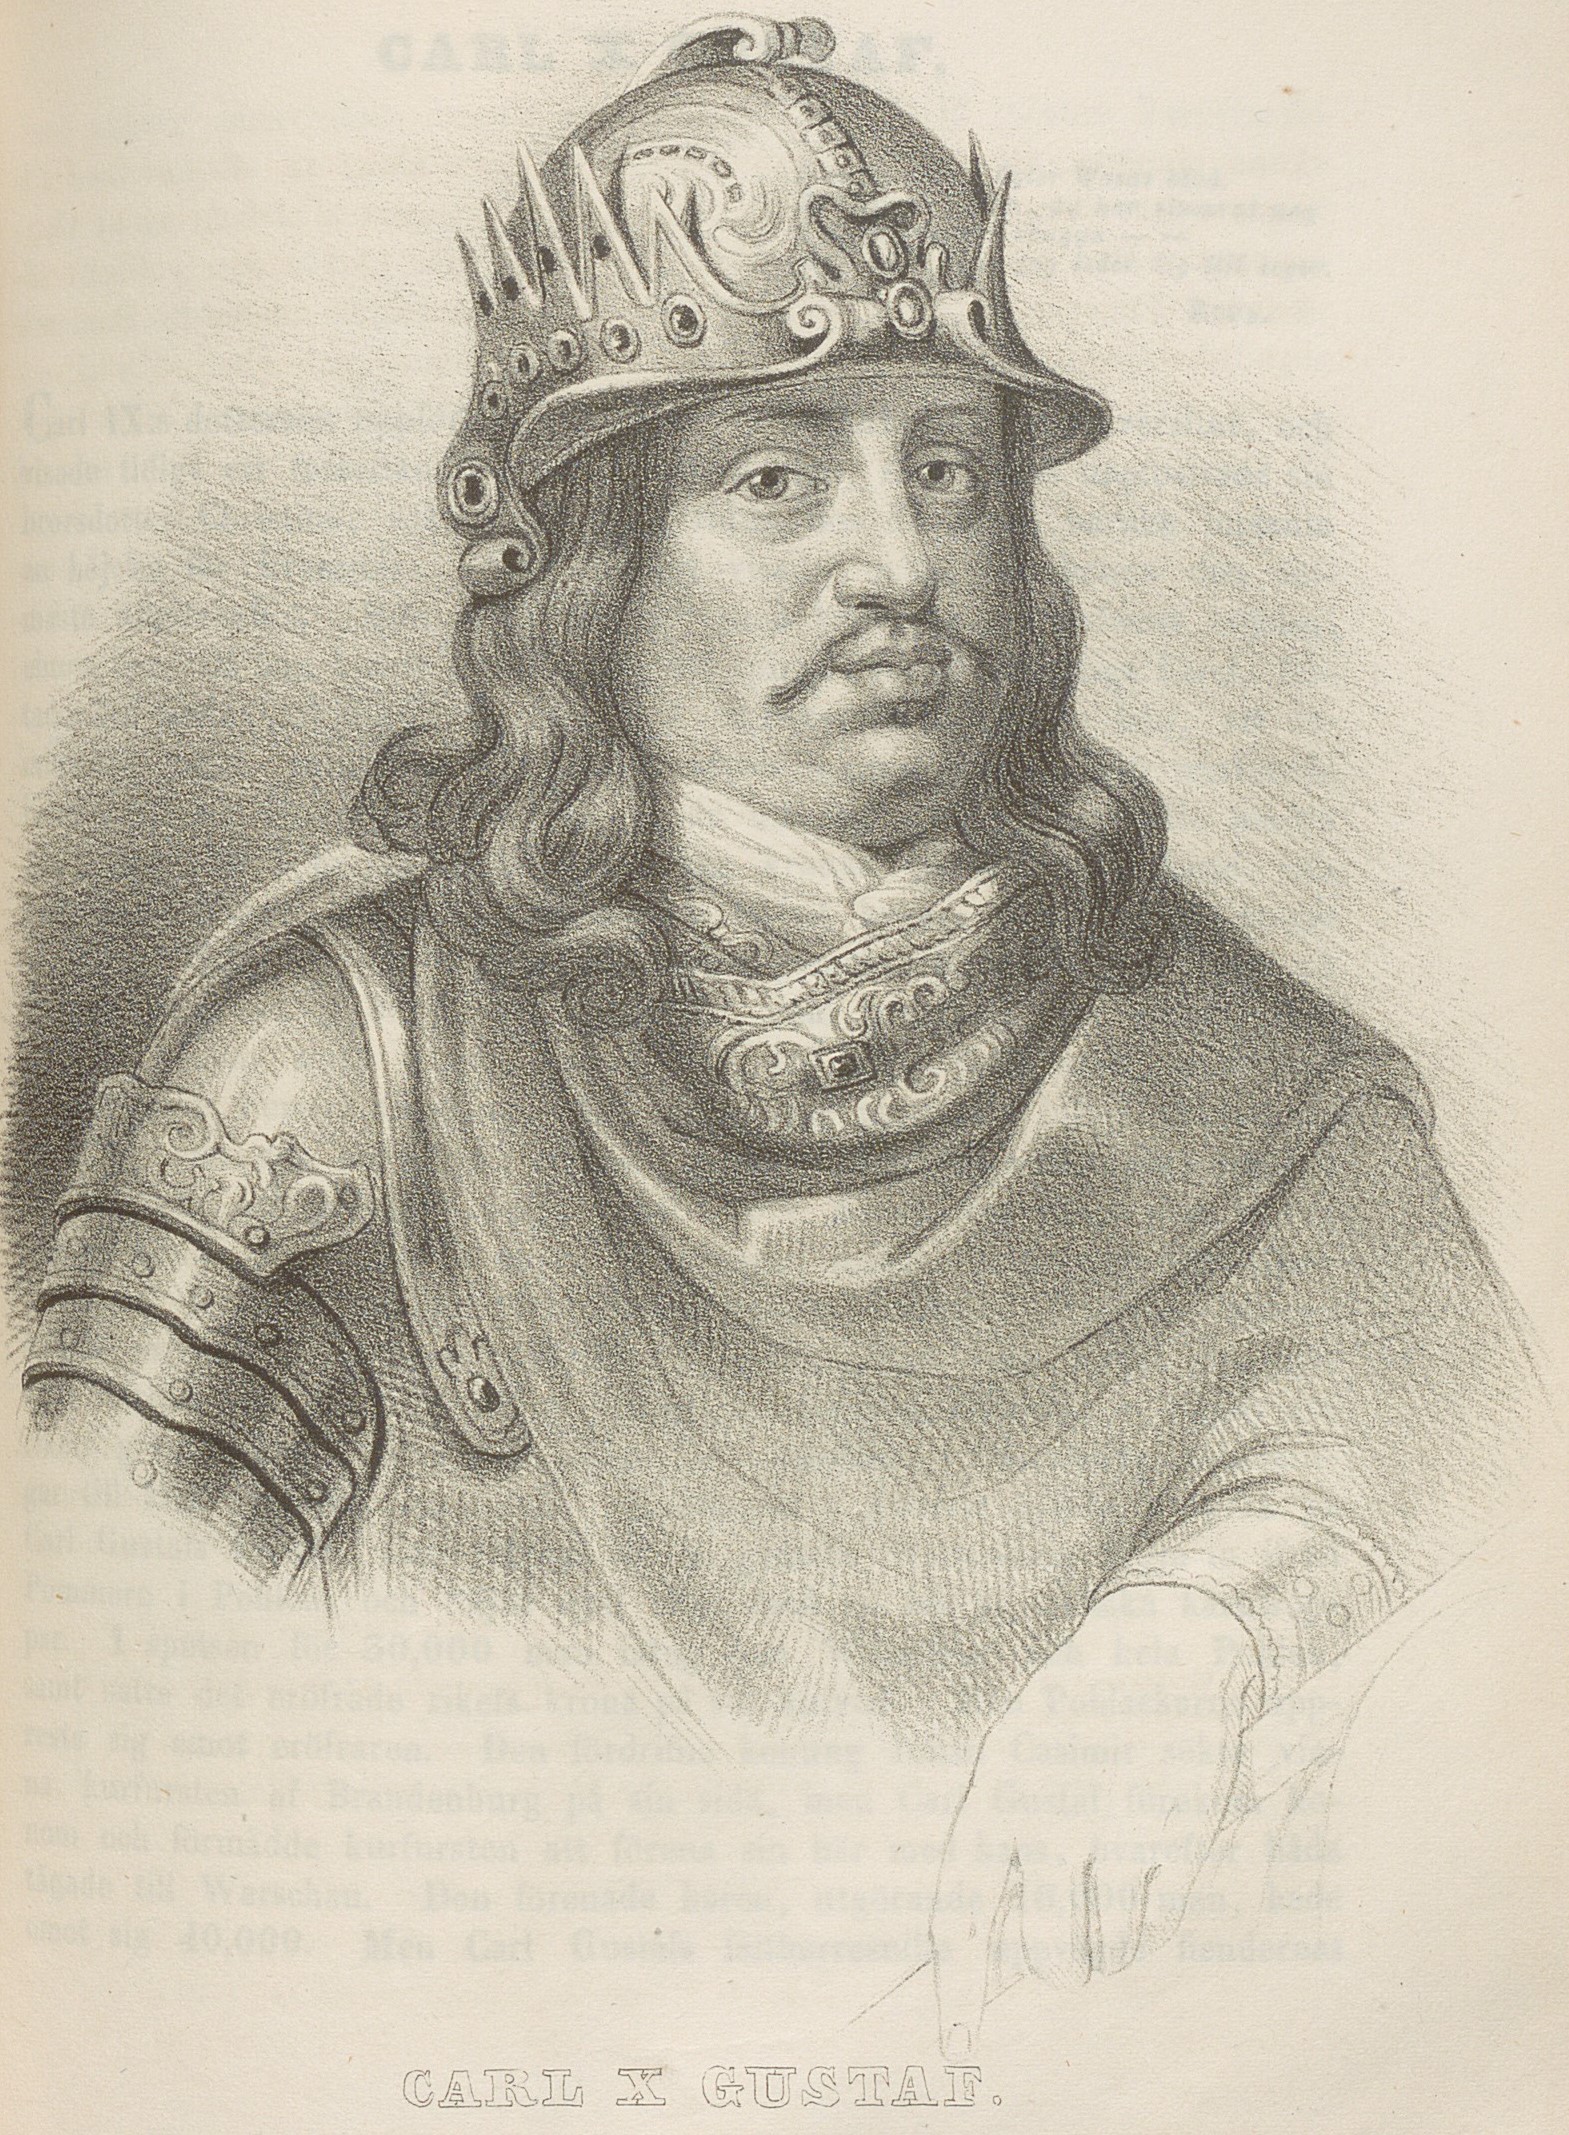 Svartvit planschbild av Karl XI, hjälm på huvudet, smal mustasch, rustning och halsduk. 